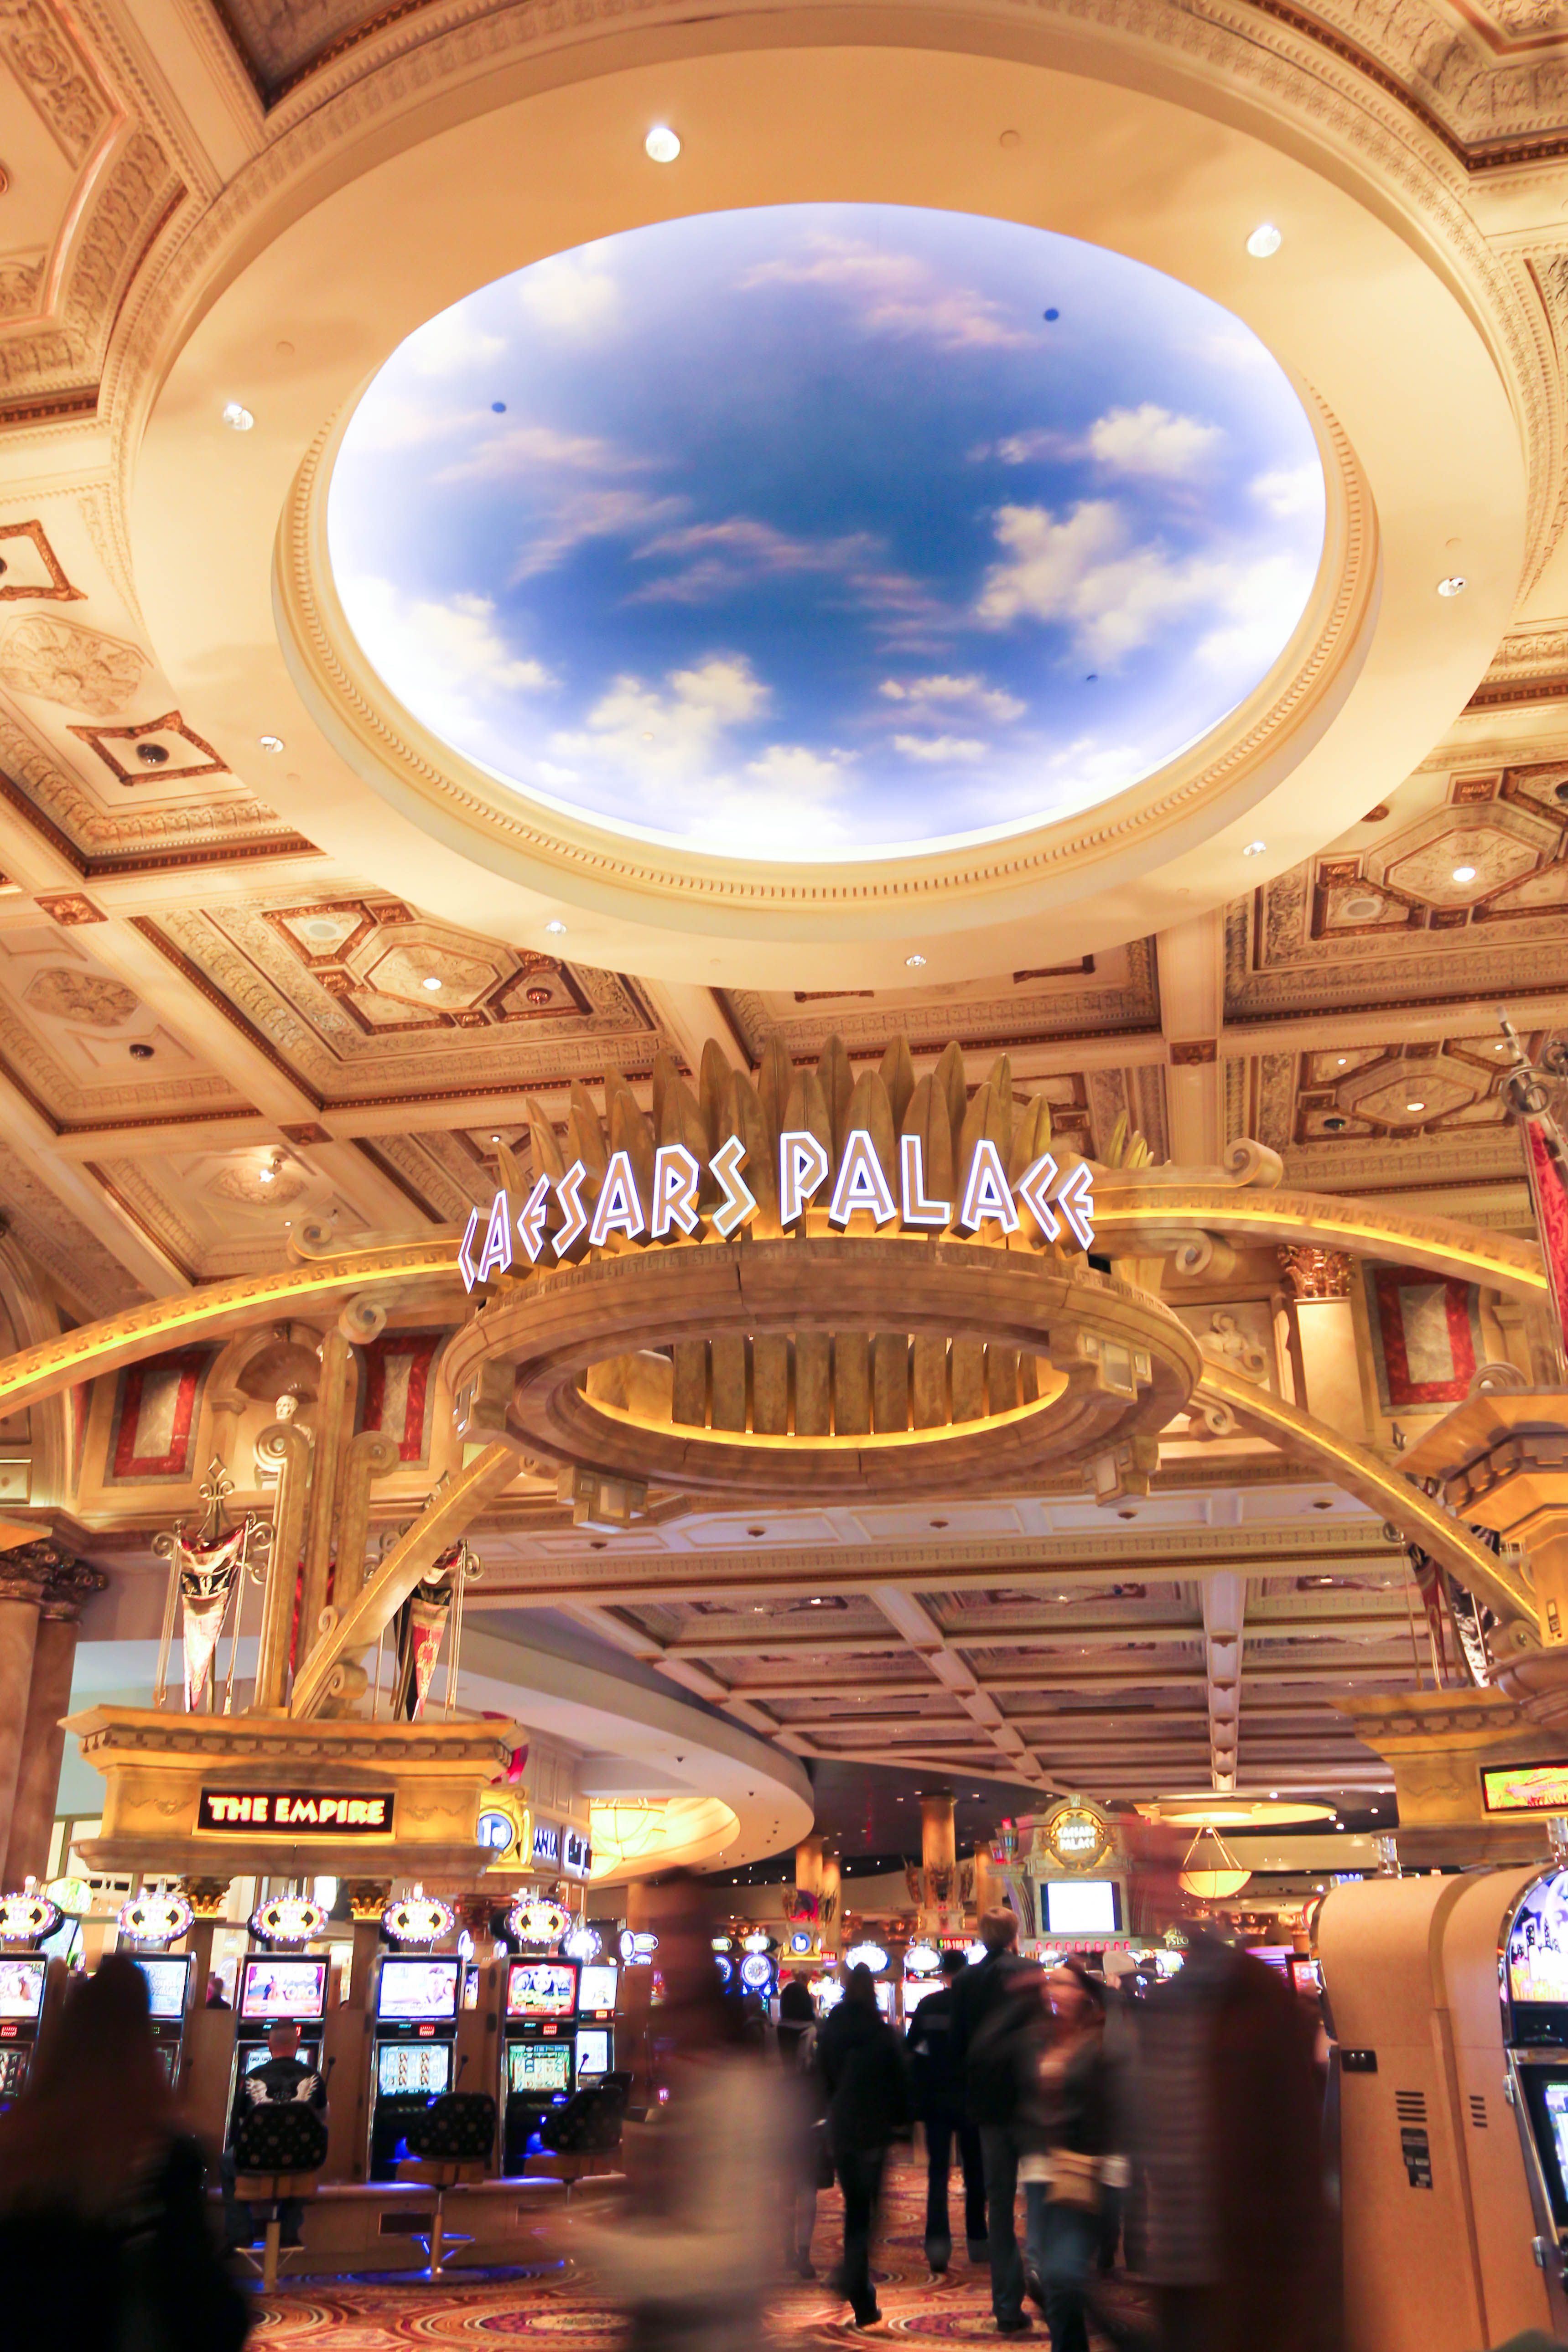 Caesars palace casino